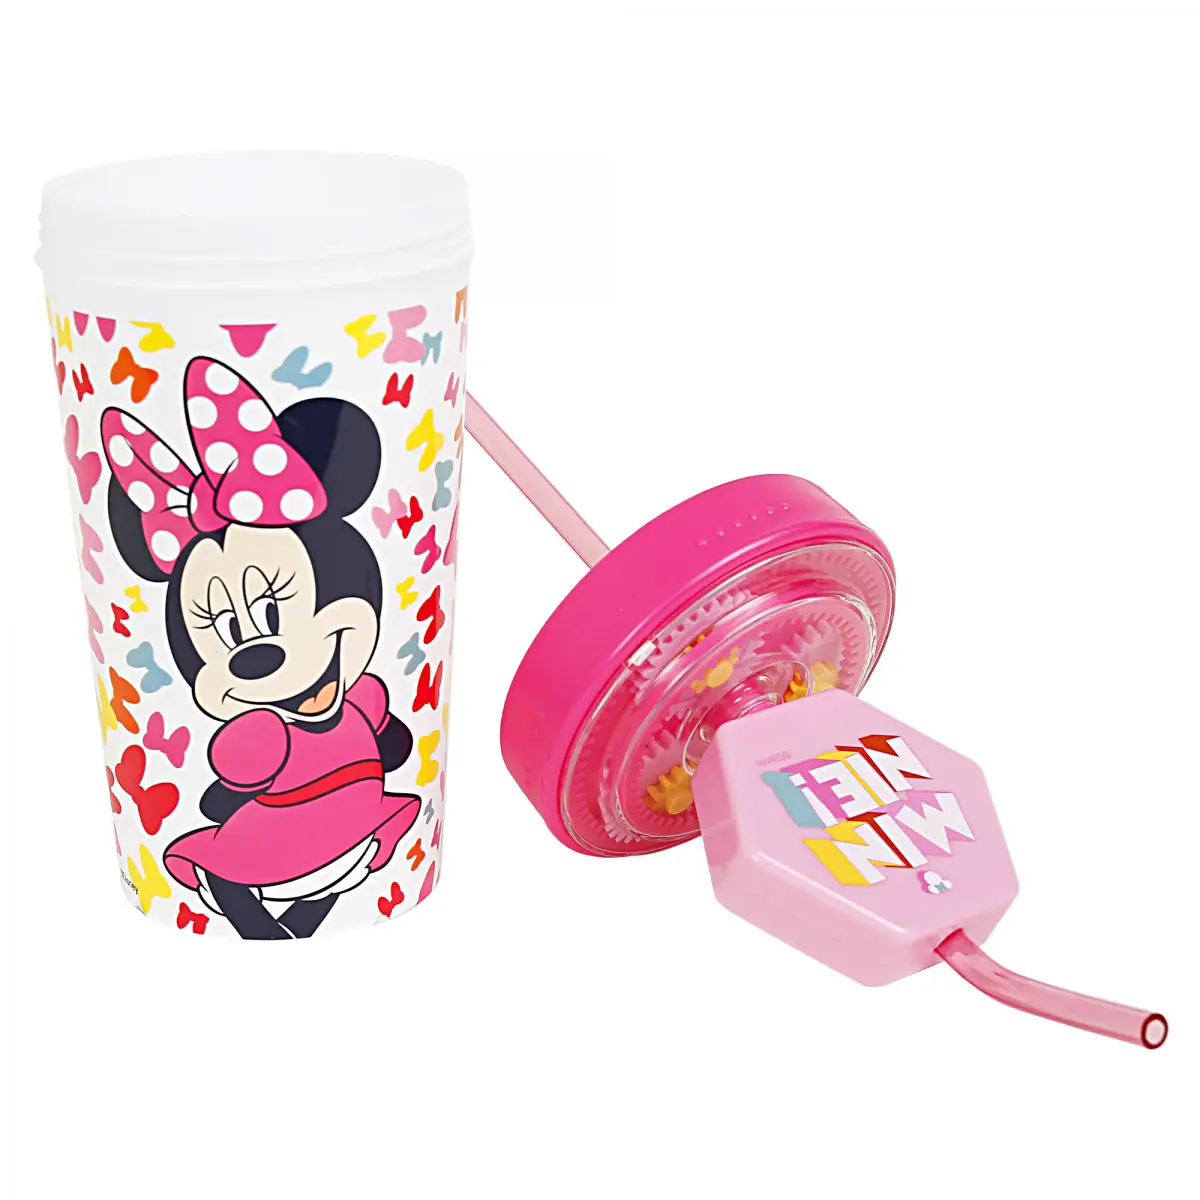 Disney Minnie Gear Water Tumbler, 390ml, Multicolour